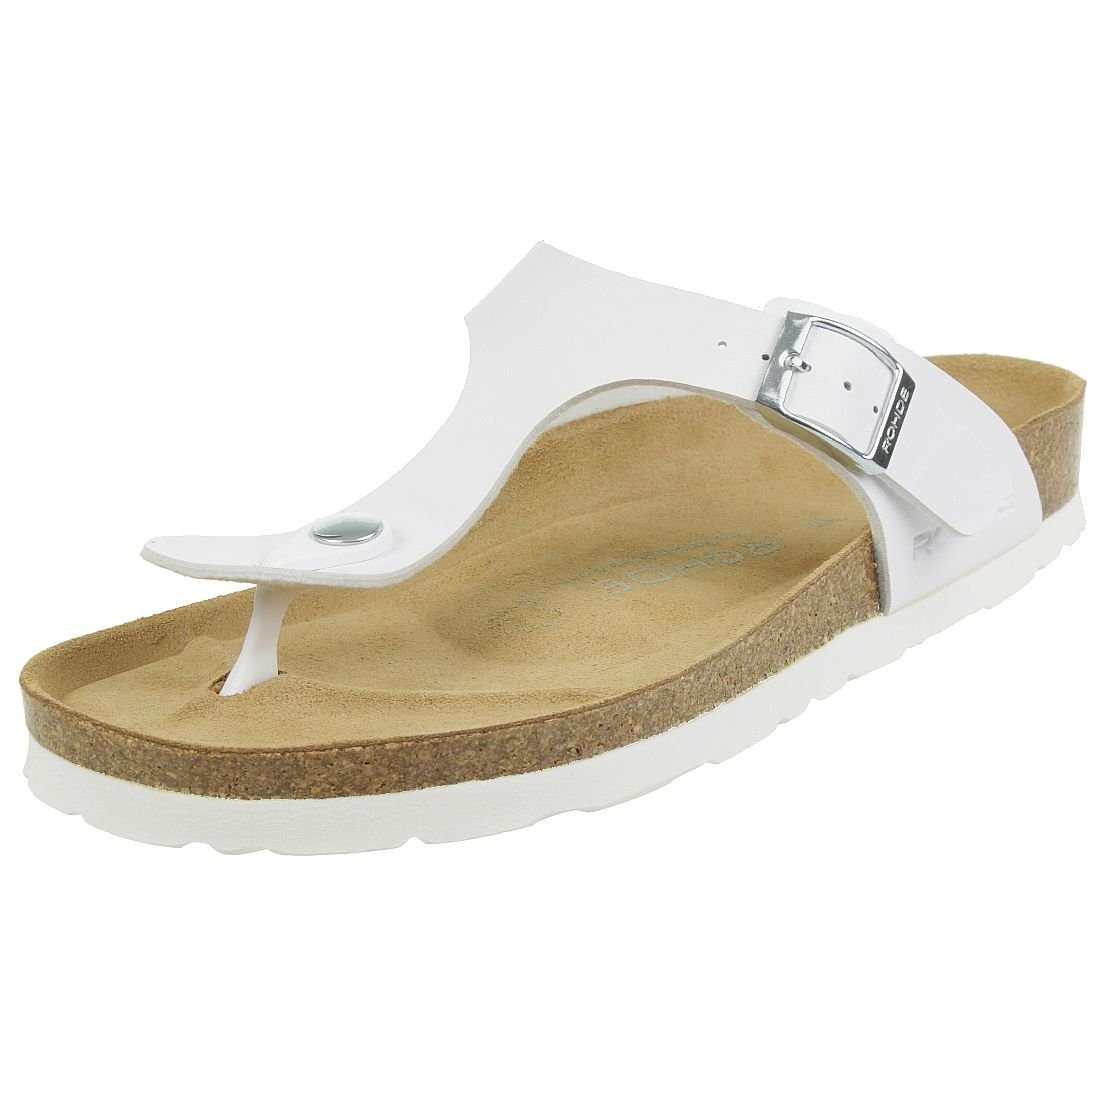 Rohde »Riesa« Sandale online kaufen | OTTO